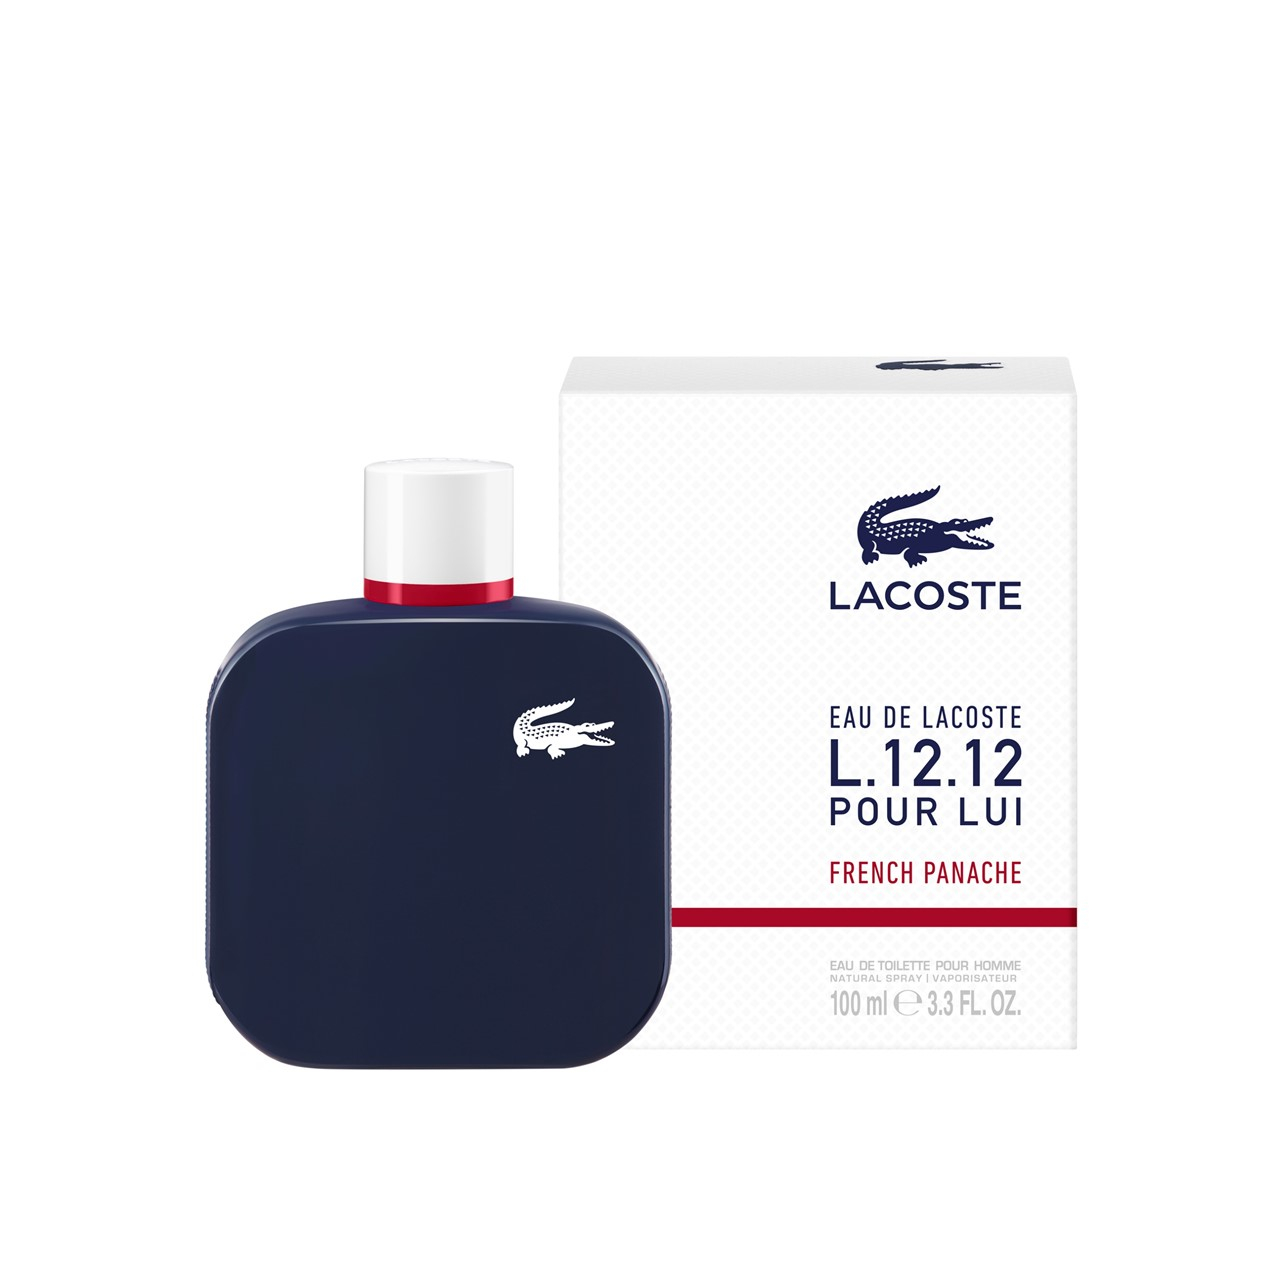 Lacoste L.12.12 Pour Lui French Panache Eau de Toilette 100ml